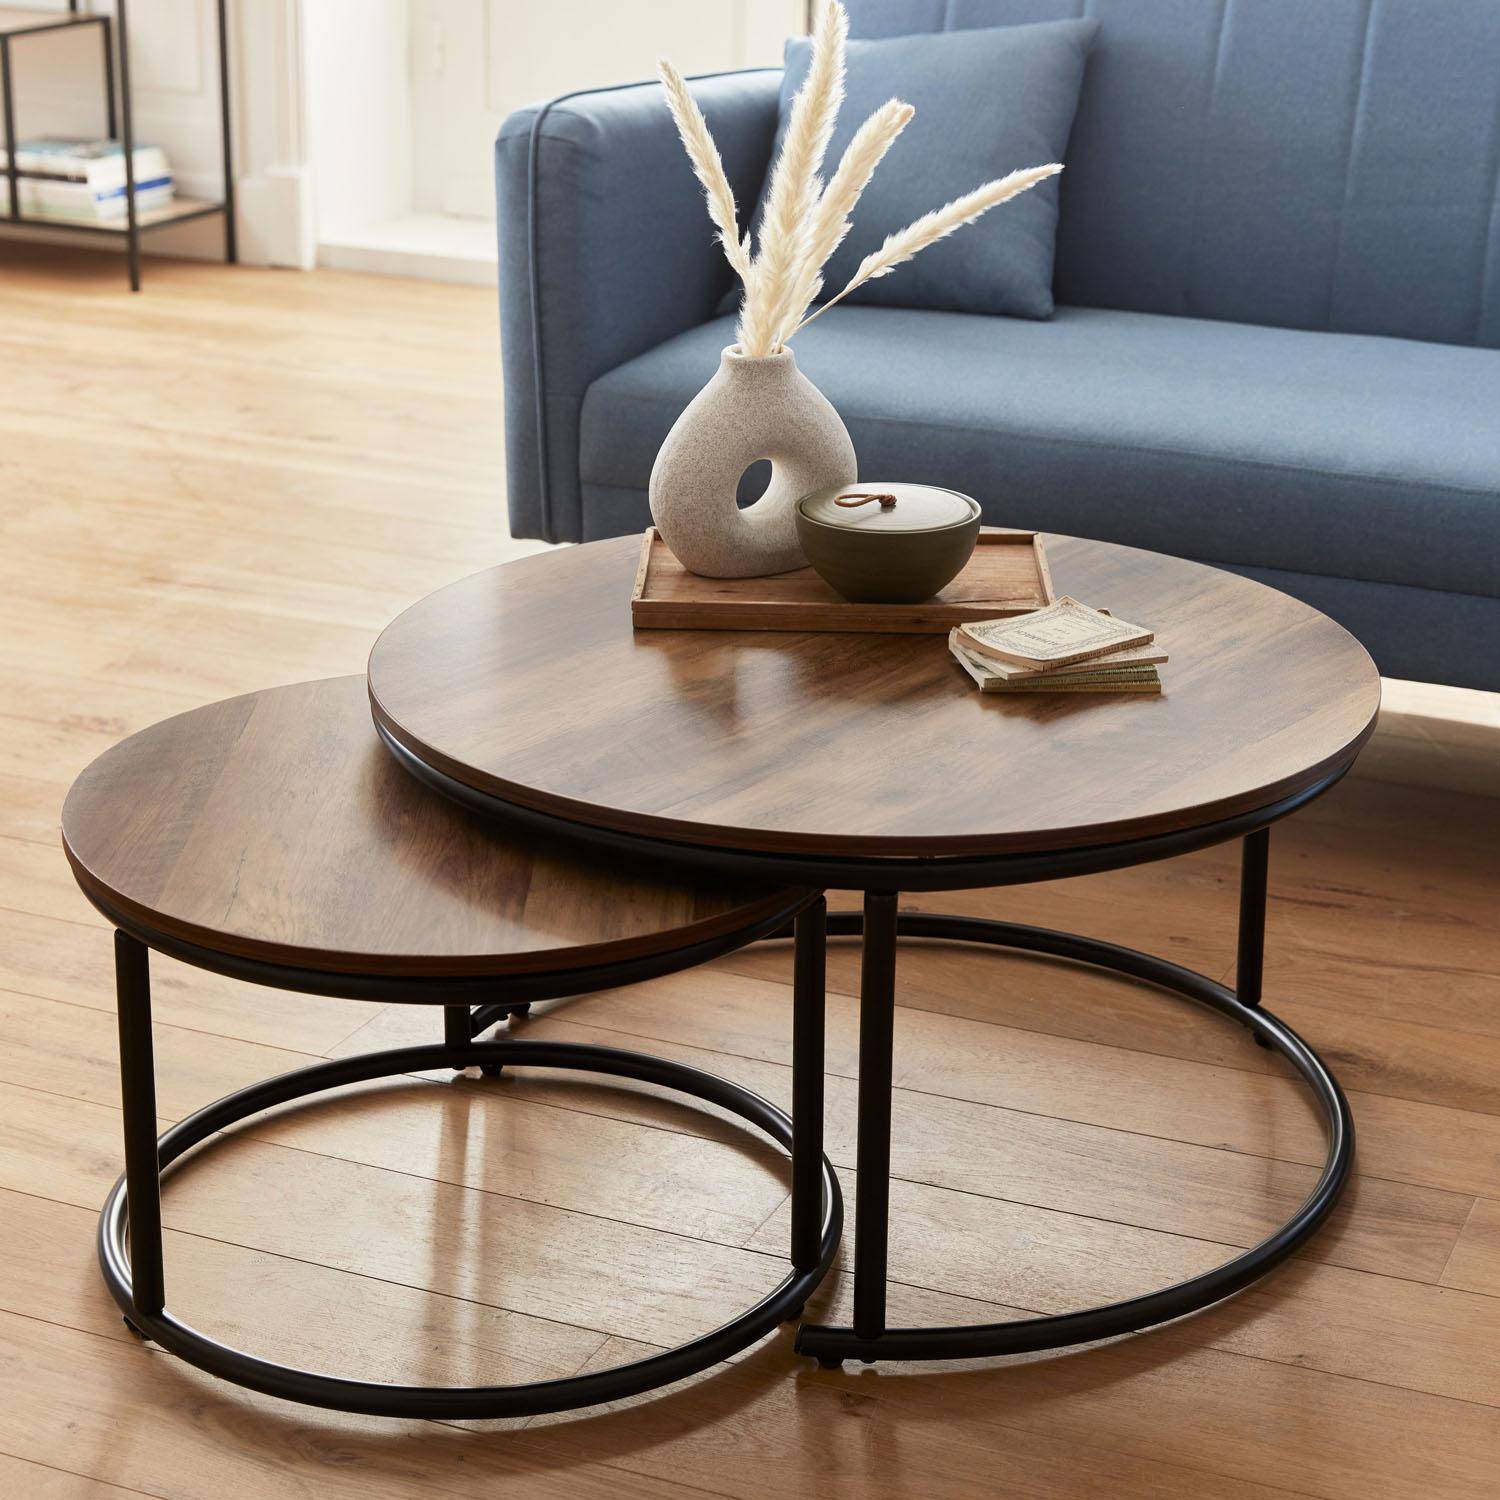 Set 2 ronde inschuifbare lage tafels van zwart metaal en een blad met houtlook, 1x Ø77xh40cm / x1 Ø57xh35cm Photo2